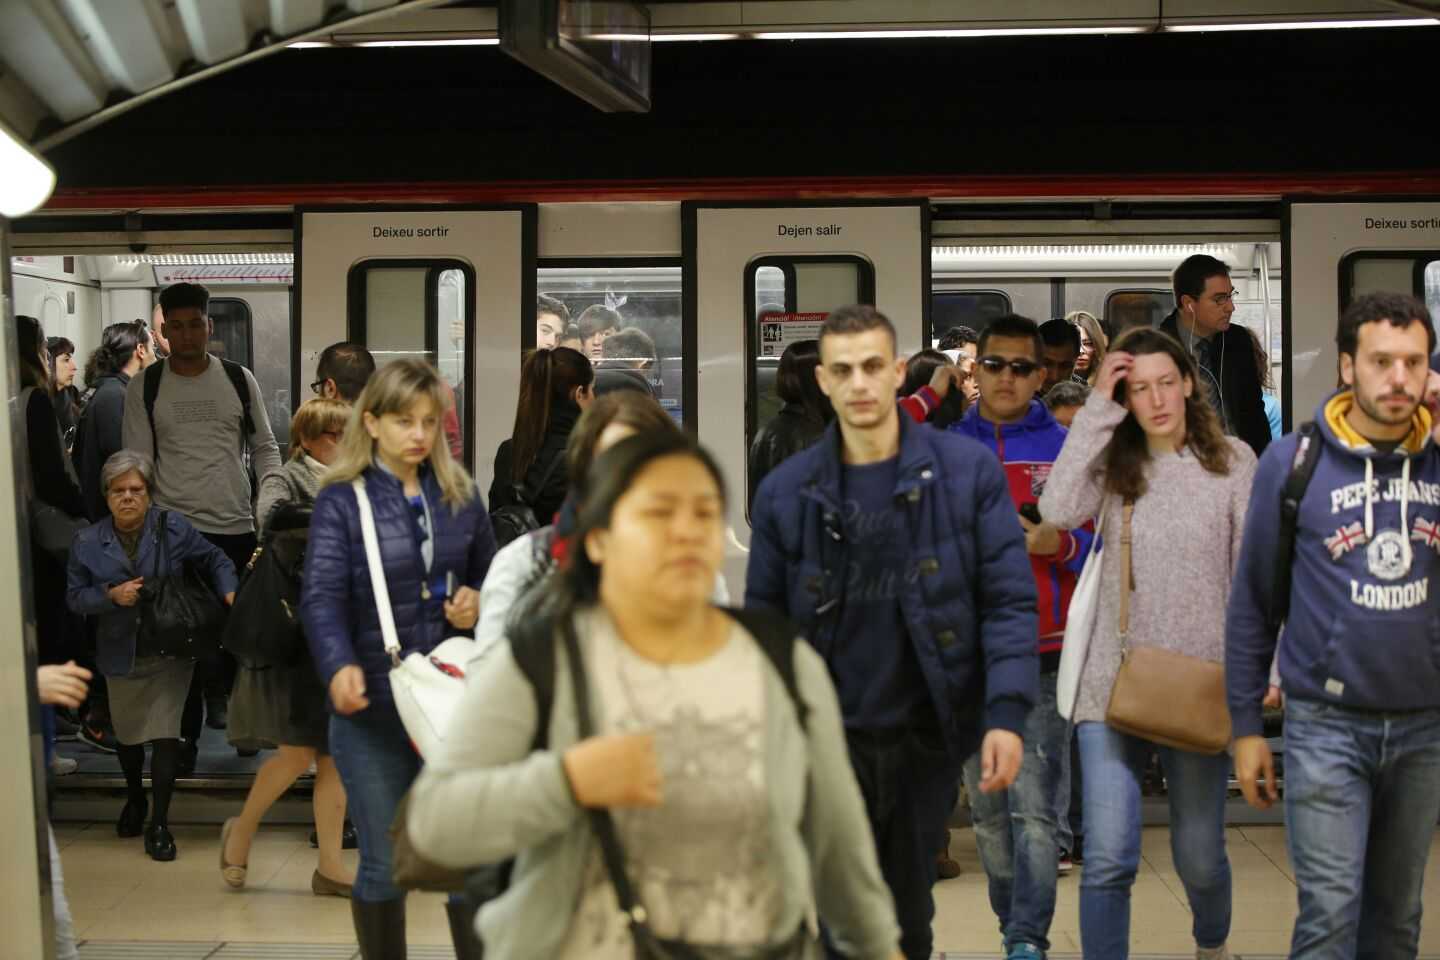 Empipament i humor entre els usuaris del Metro